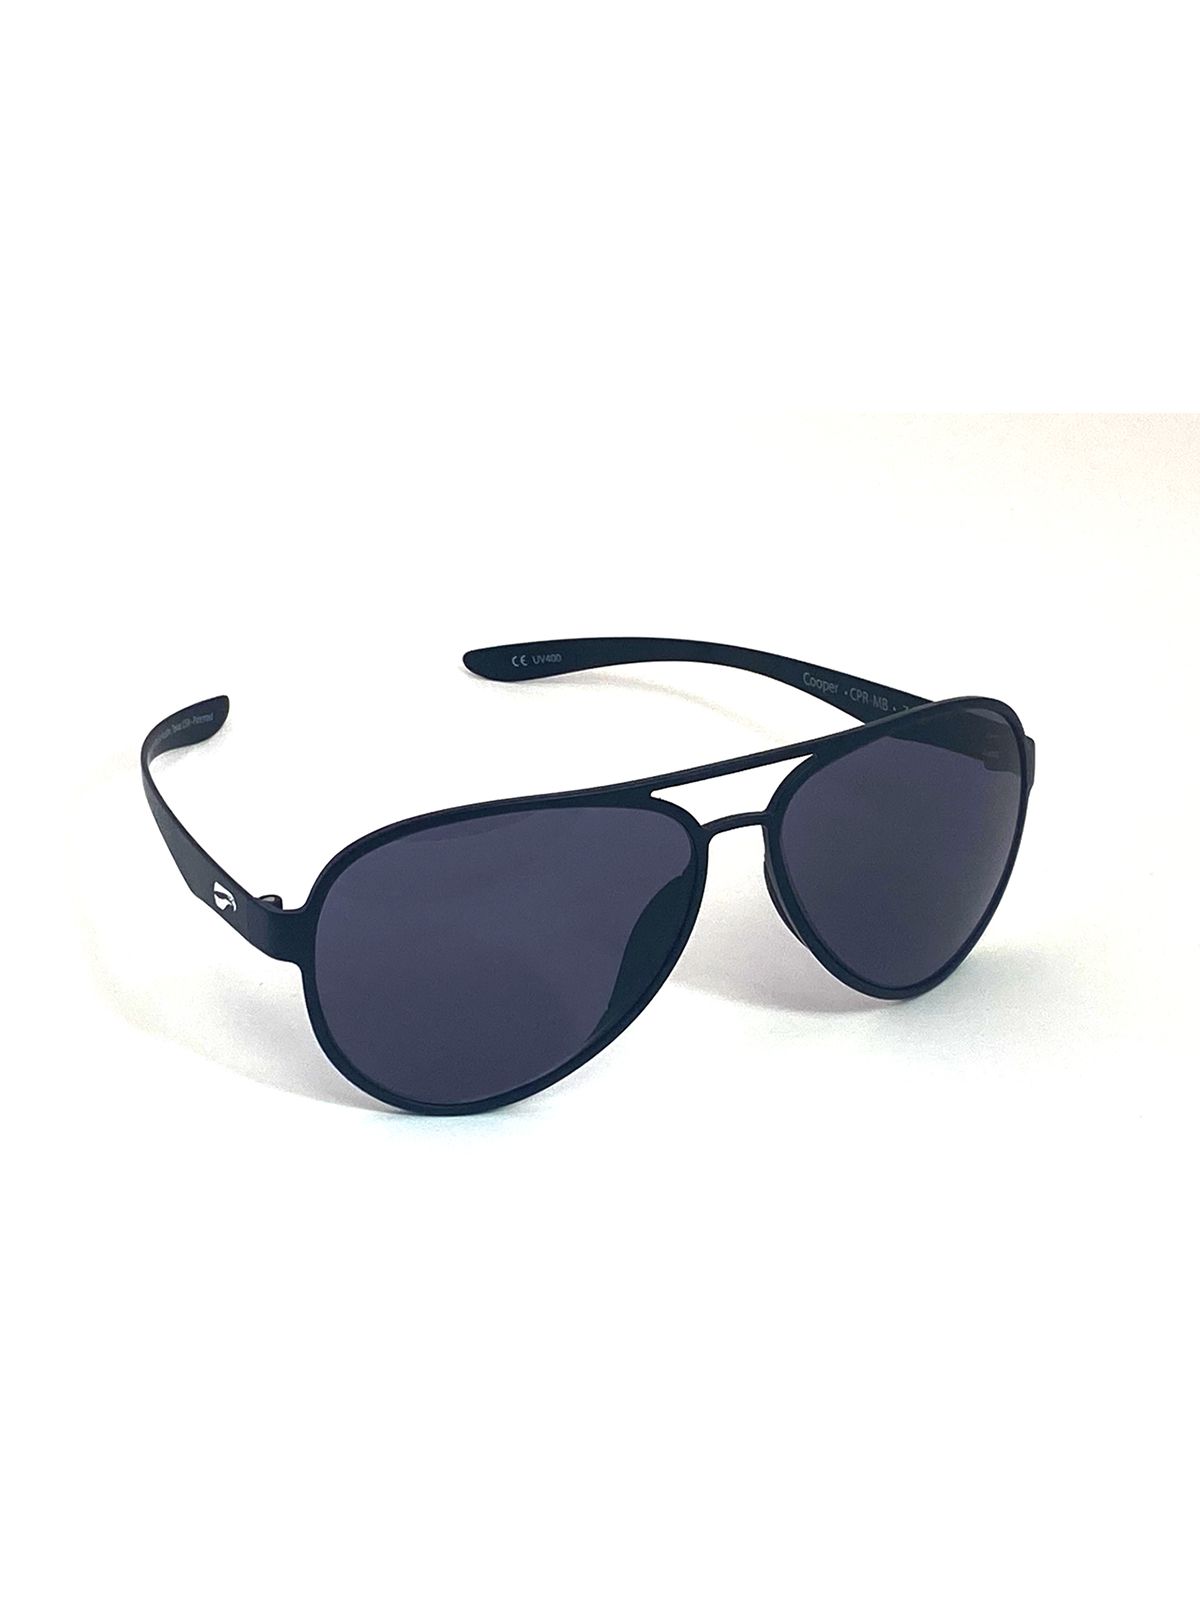 Flying Eyes Sunglasses Cooper Aviator - Matte Black Frame, Solid Gray Lenses